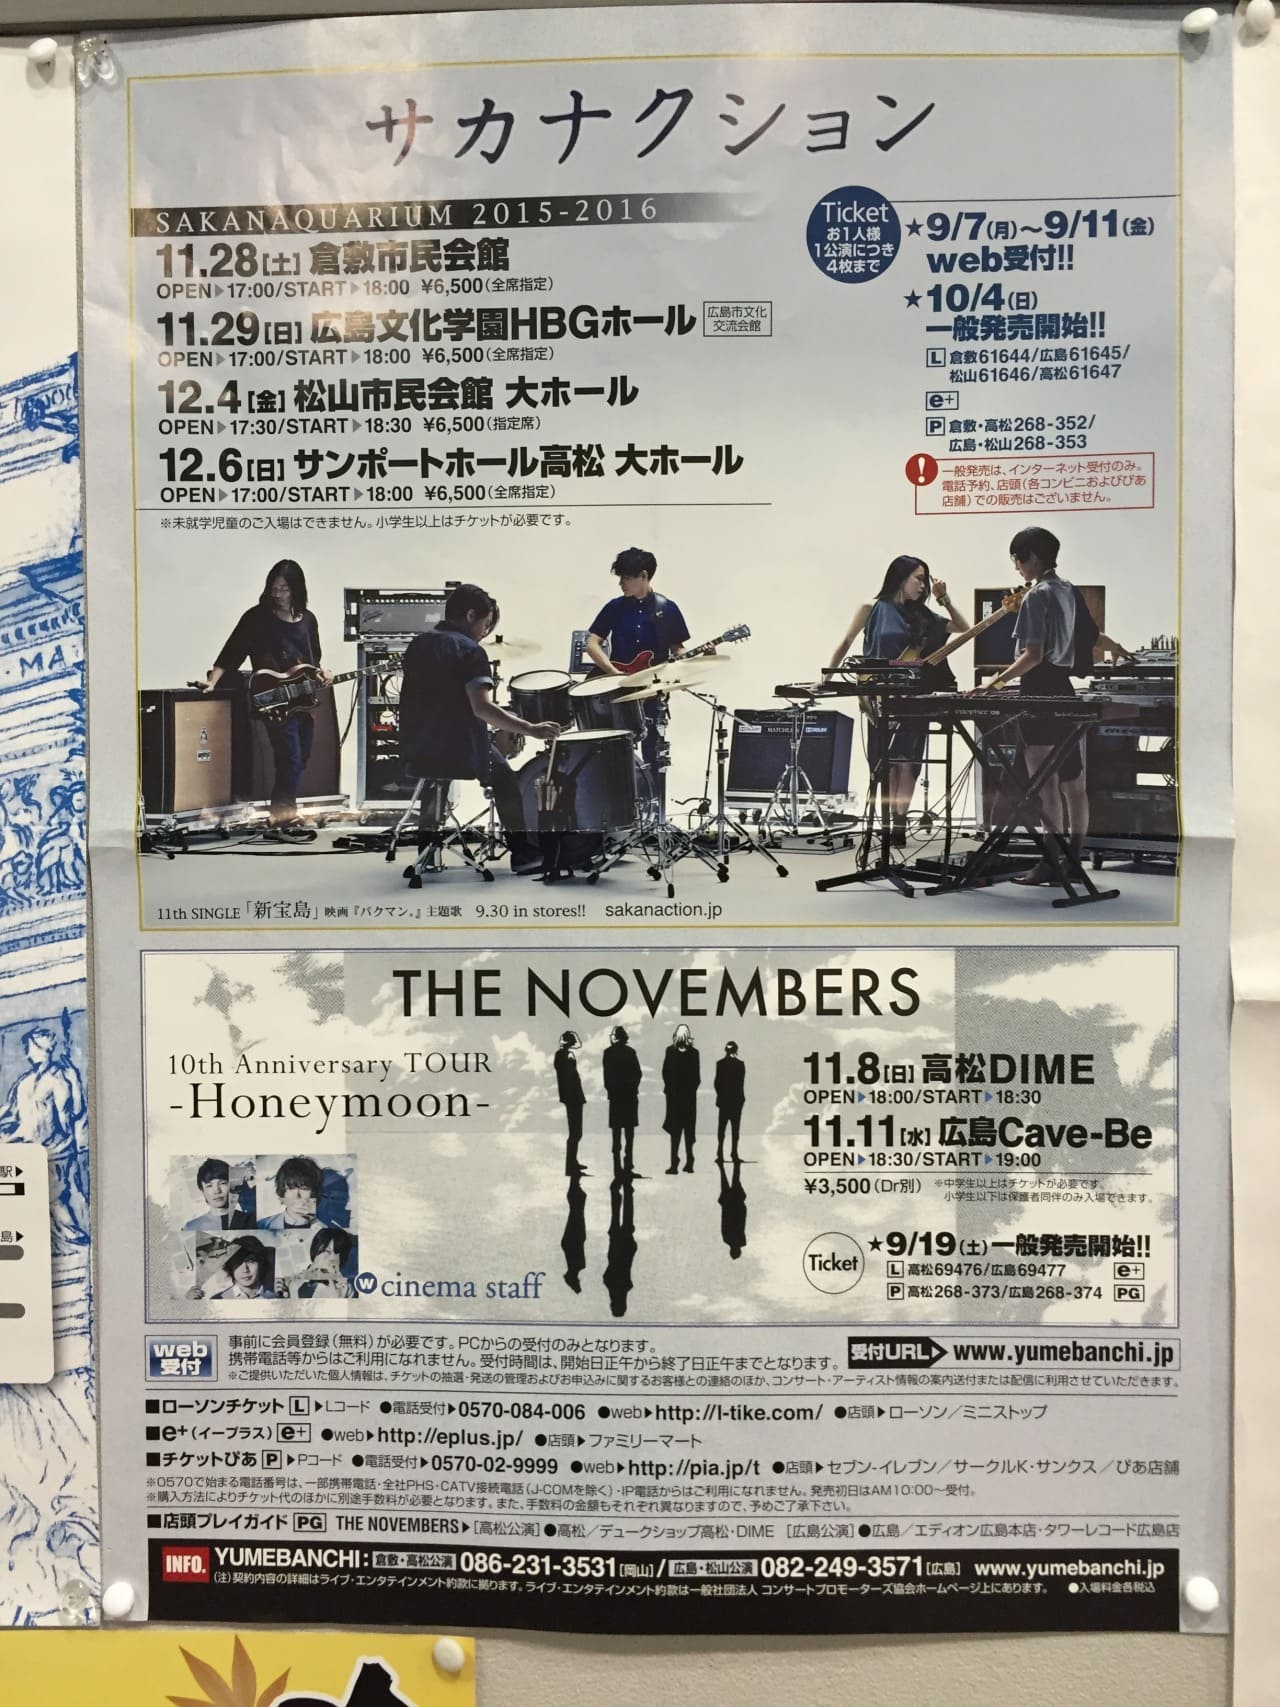 サカナクション SAKANAQUARIUM 2015-2016 NF Records launch tour